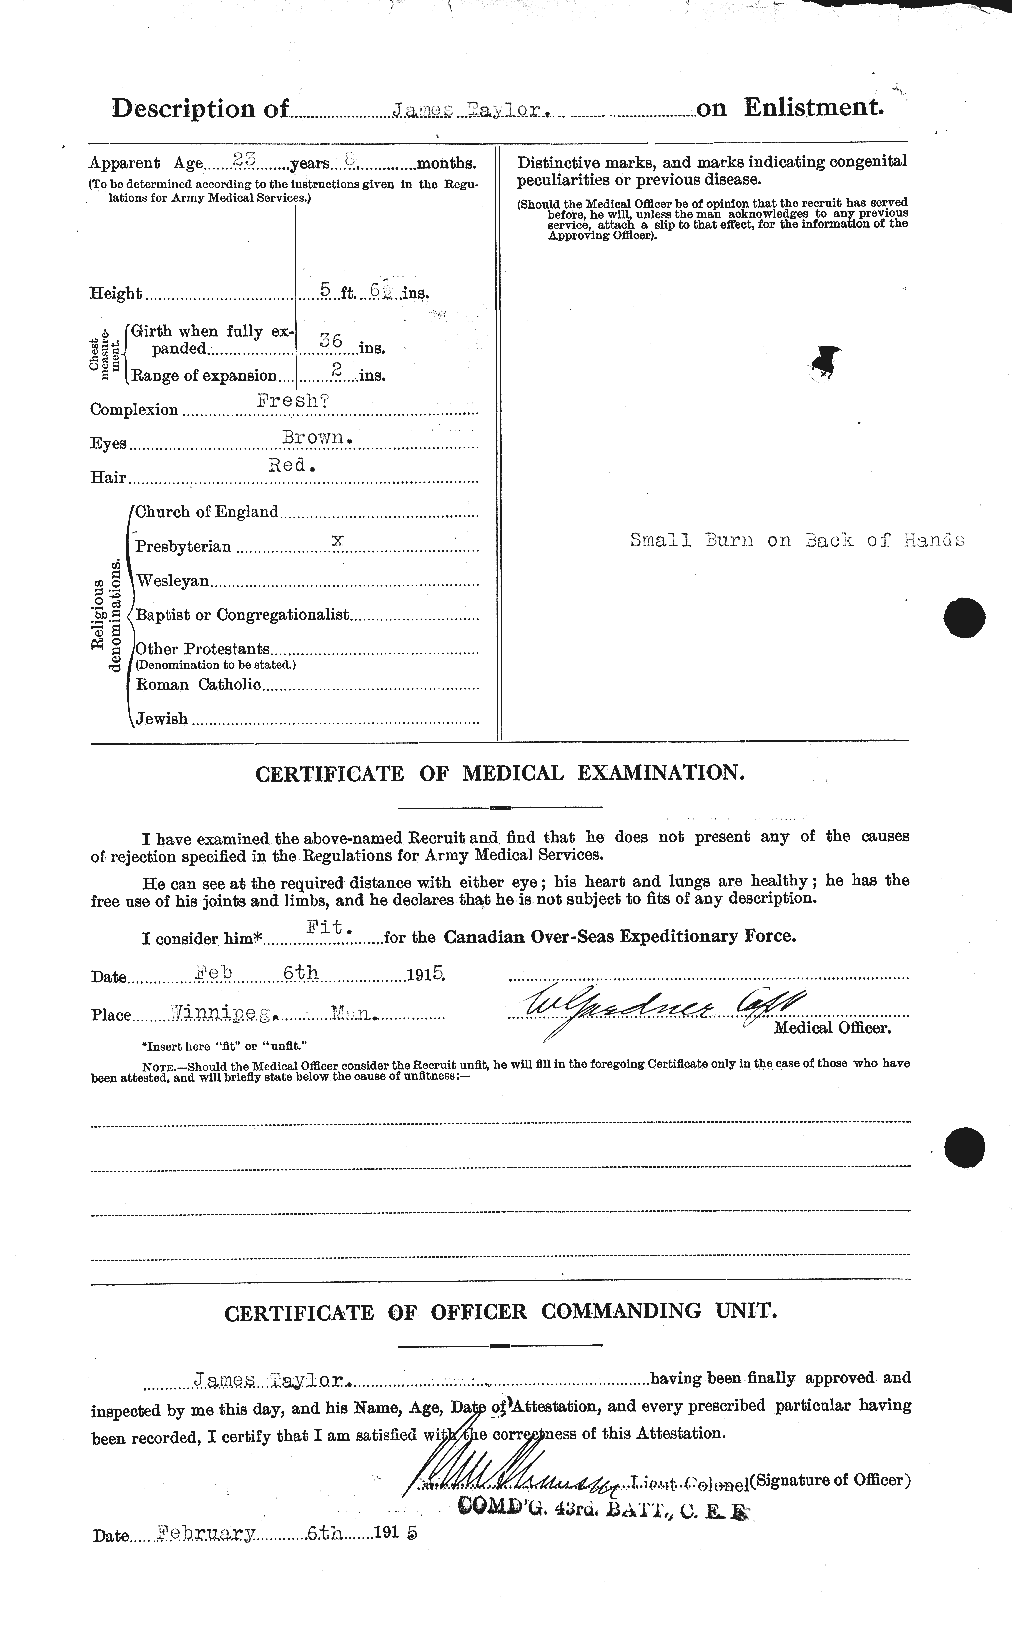 Dossiers du Personnel de la Première Guerre mondiale - CEC 626690b